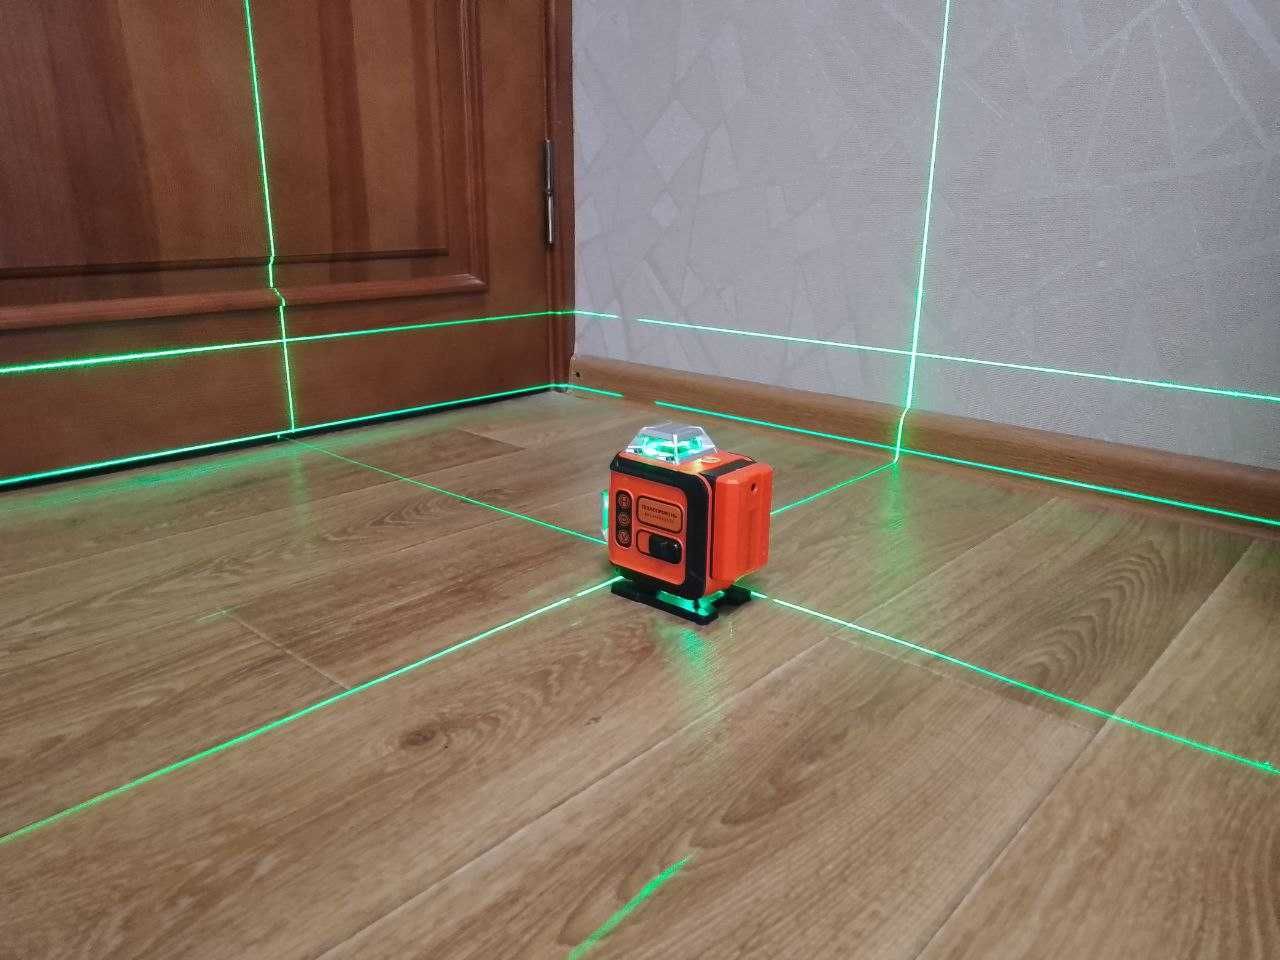 Професійний лазерний рівень "Технопромінь" 4D із зеленими лініями